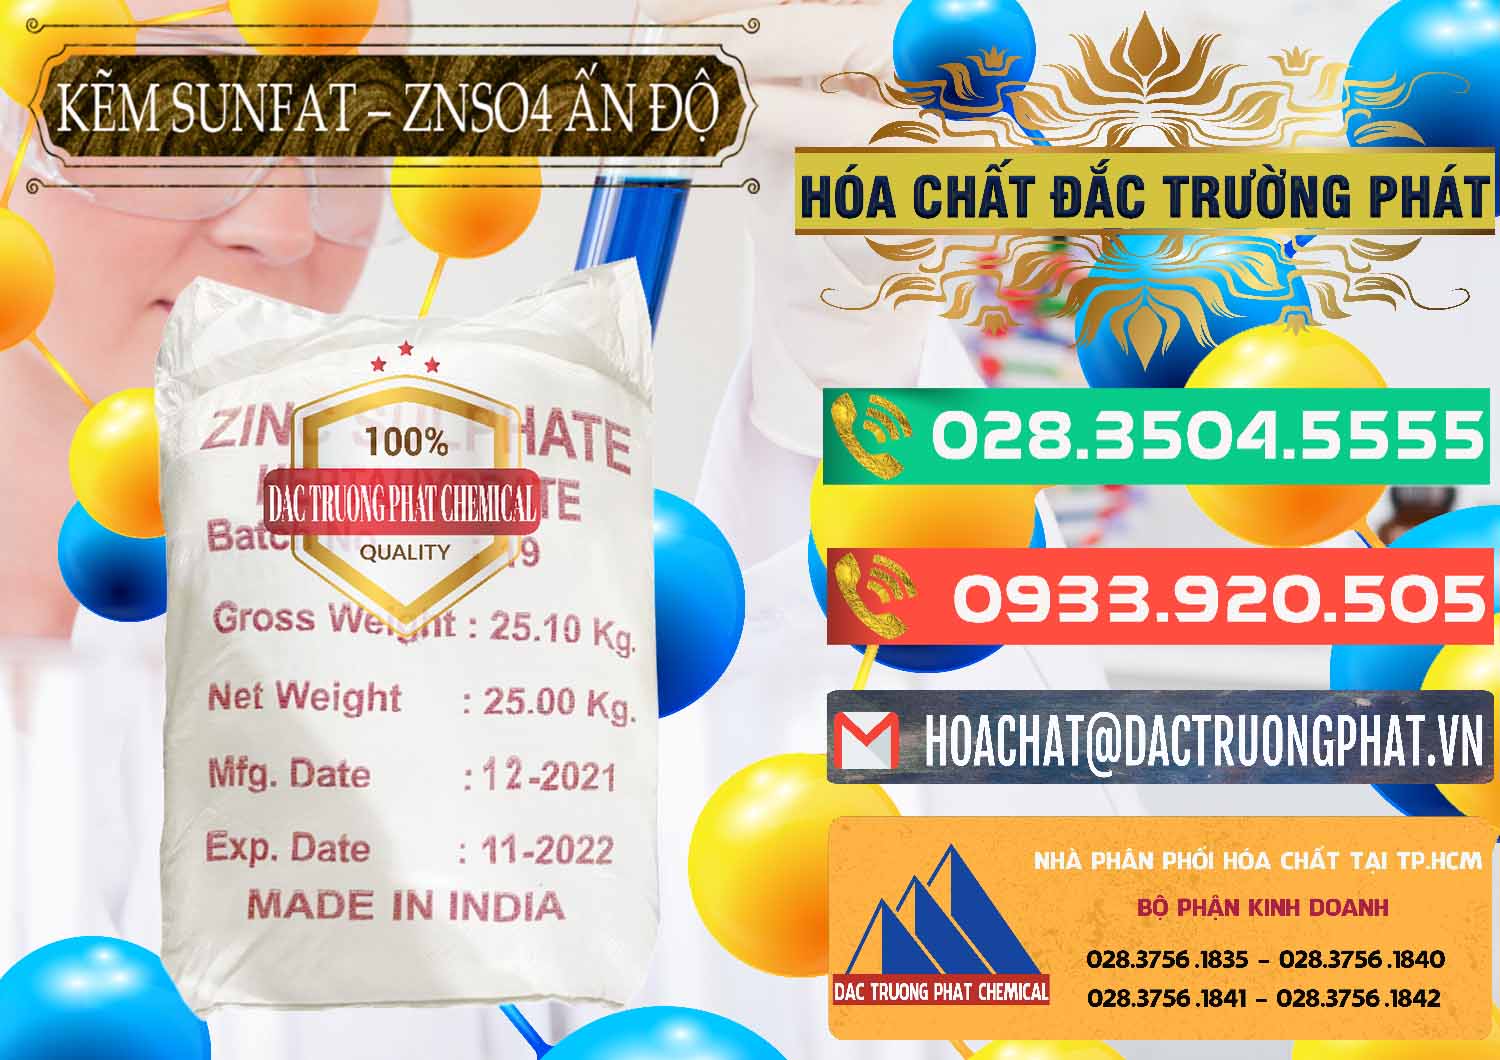 Nơi chuyên bán - cung cấp Kẽm Sunfat – ZNSO4.7H2O Ấn Độ India - 0417 - Cty kinh doanh & phân phối hóa chất tại TP.HCM - congtyhoachat.com.vn